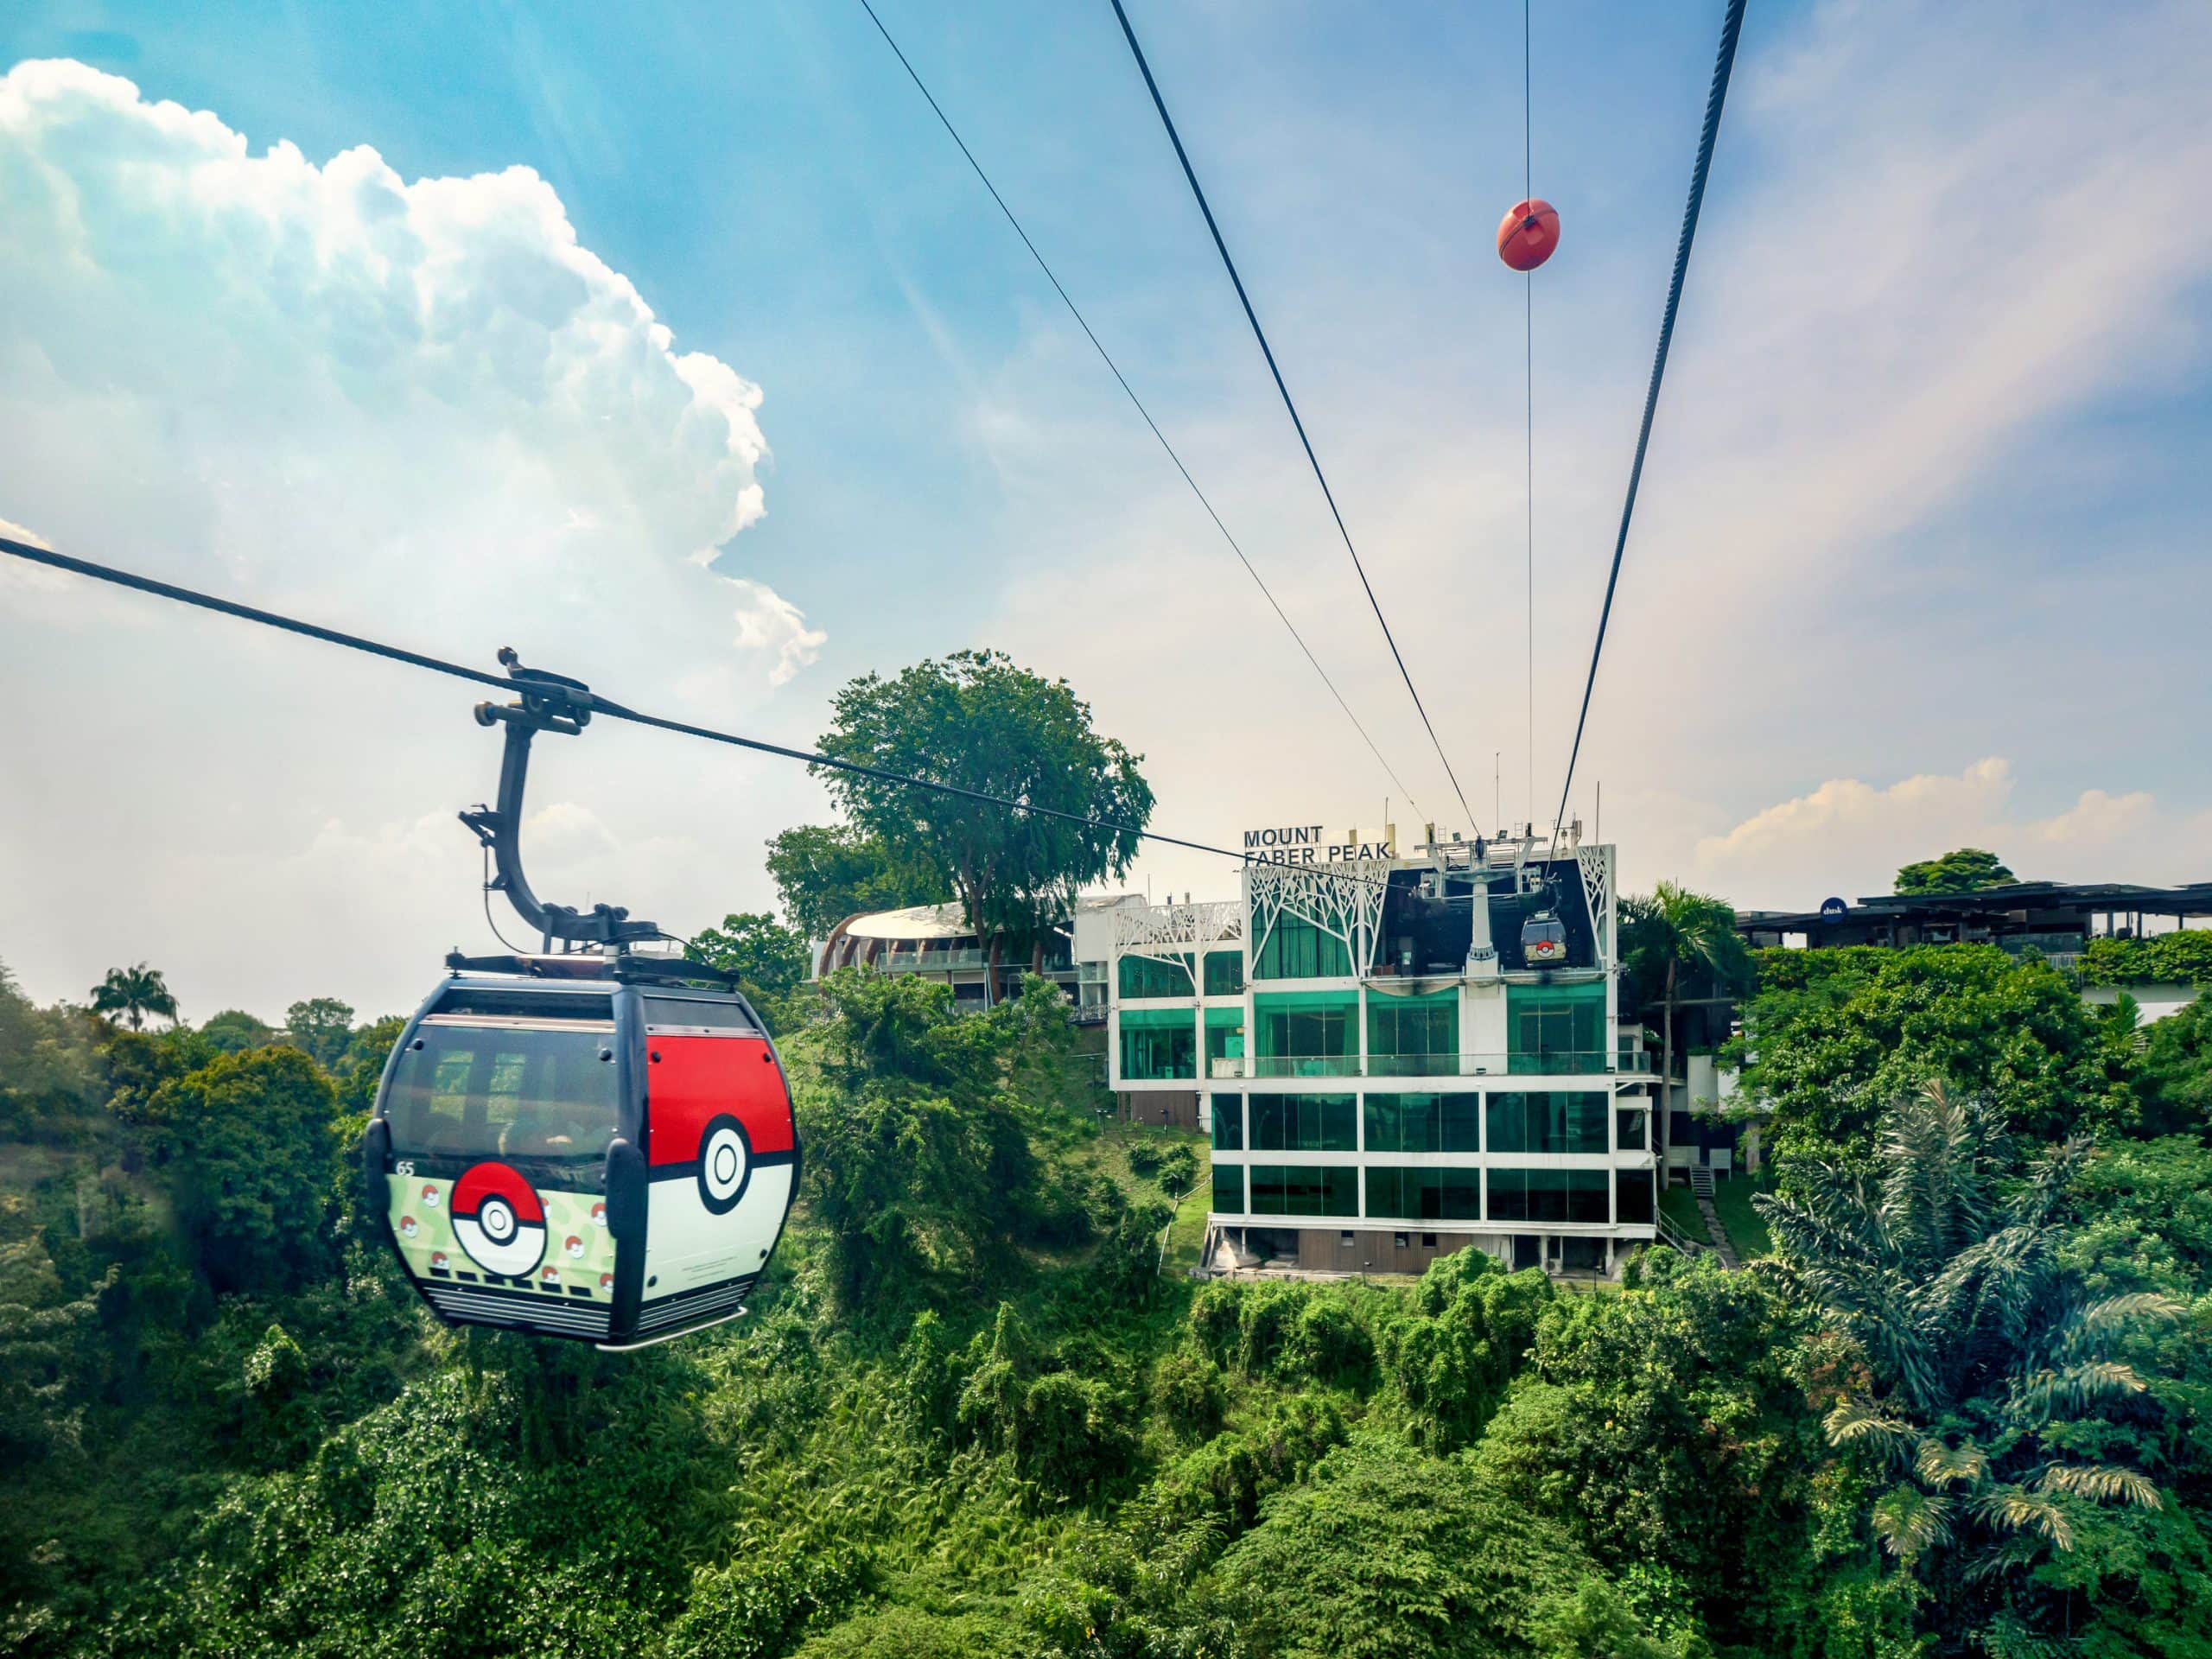 Pokémon cable car